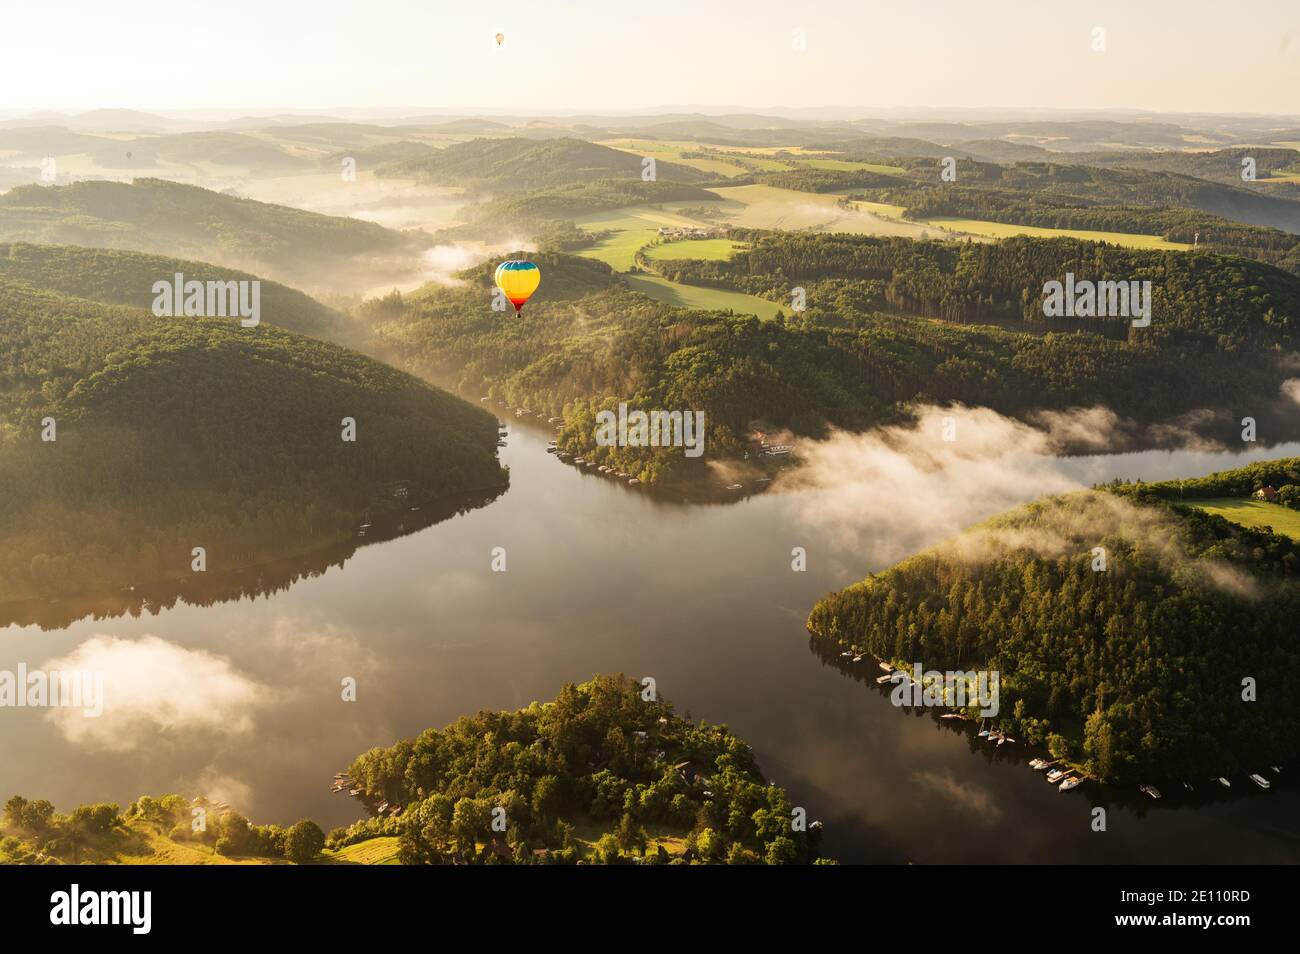 Globo de aire caliente flotando en la luz de la mañana sobre el Paisaje de la República Checa Foto de stock